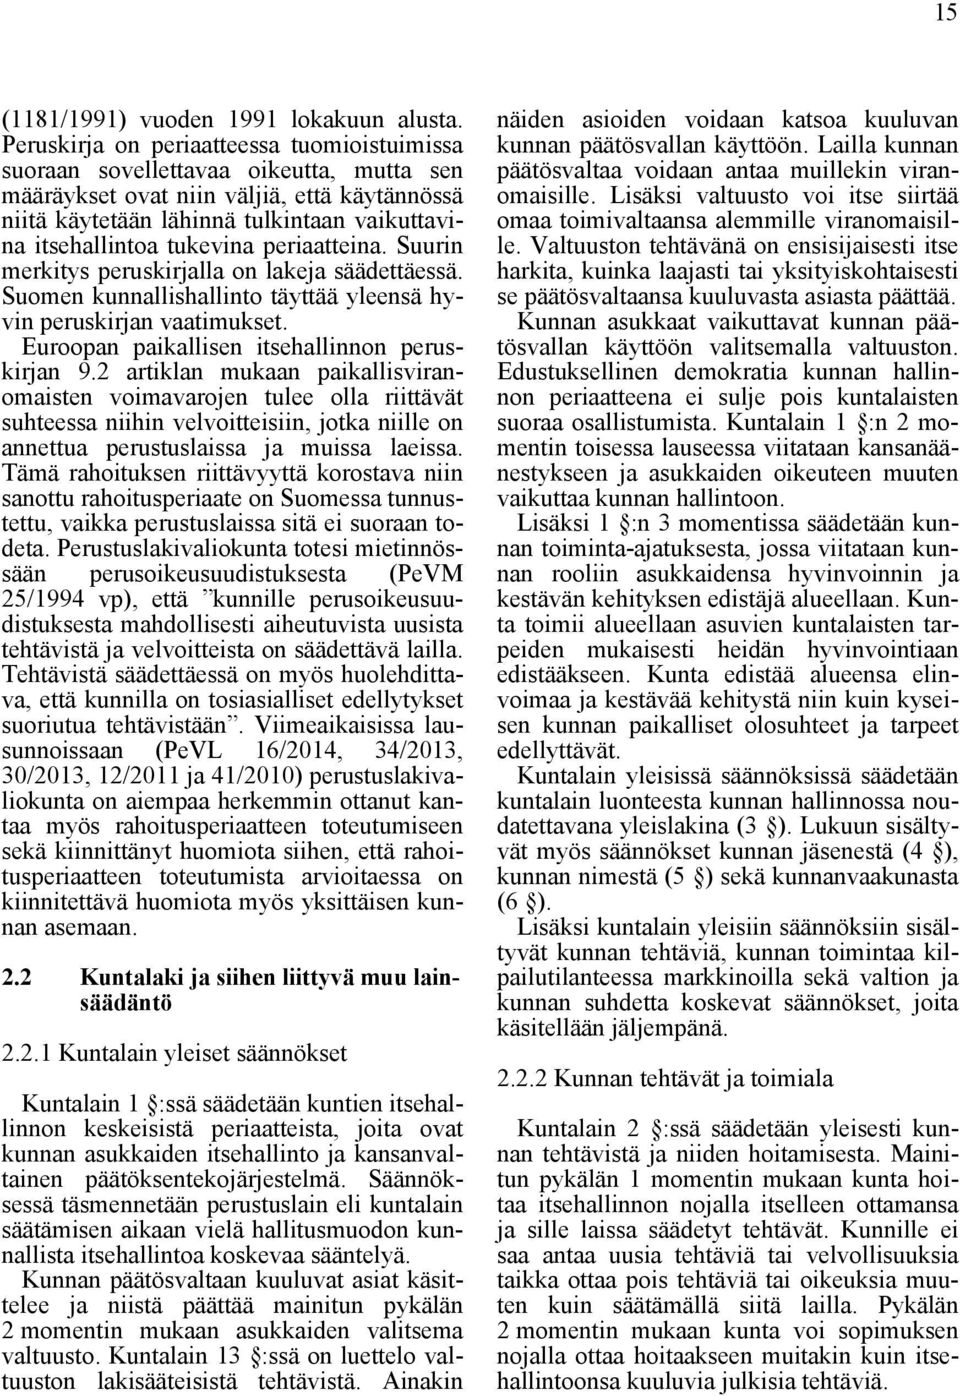 tukevina periaatteina. Suurin merkitys peruskirjalla on lakeja säädettäessä. Suomen kunnallishallinto täyttää yleensä hyvin peruskirjan vaatimukset. Euroopan paikallisen itsehallinnon peruskirjan 9.